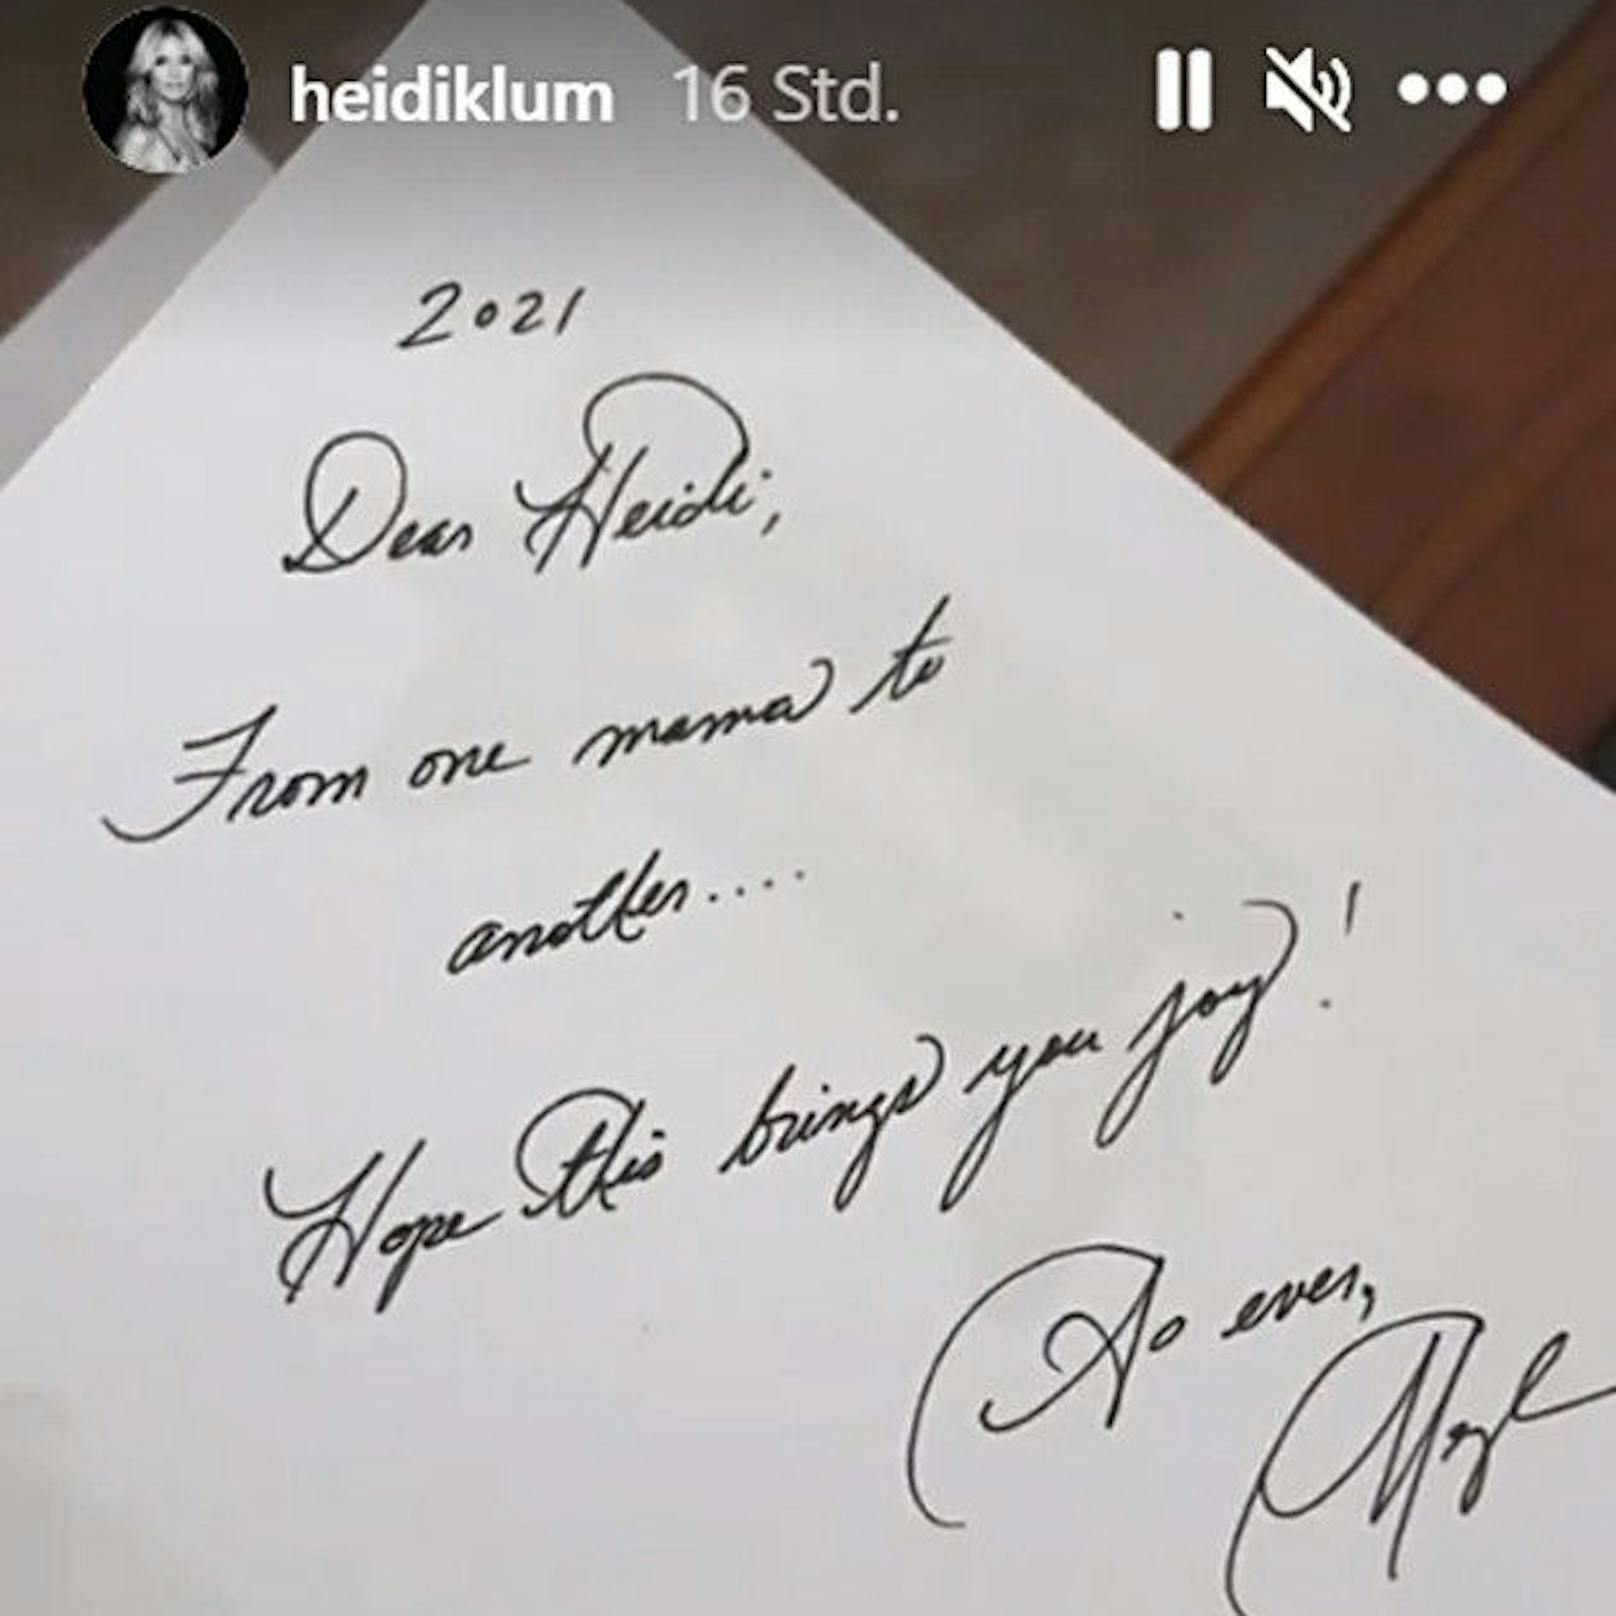 Herzogin Meghan schrieb Heidi Klum diese private Nachricht 